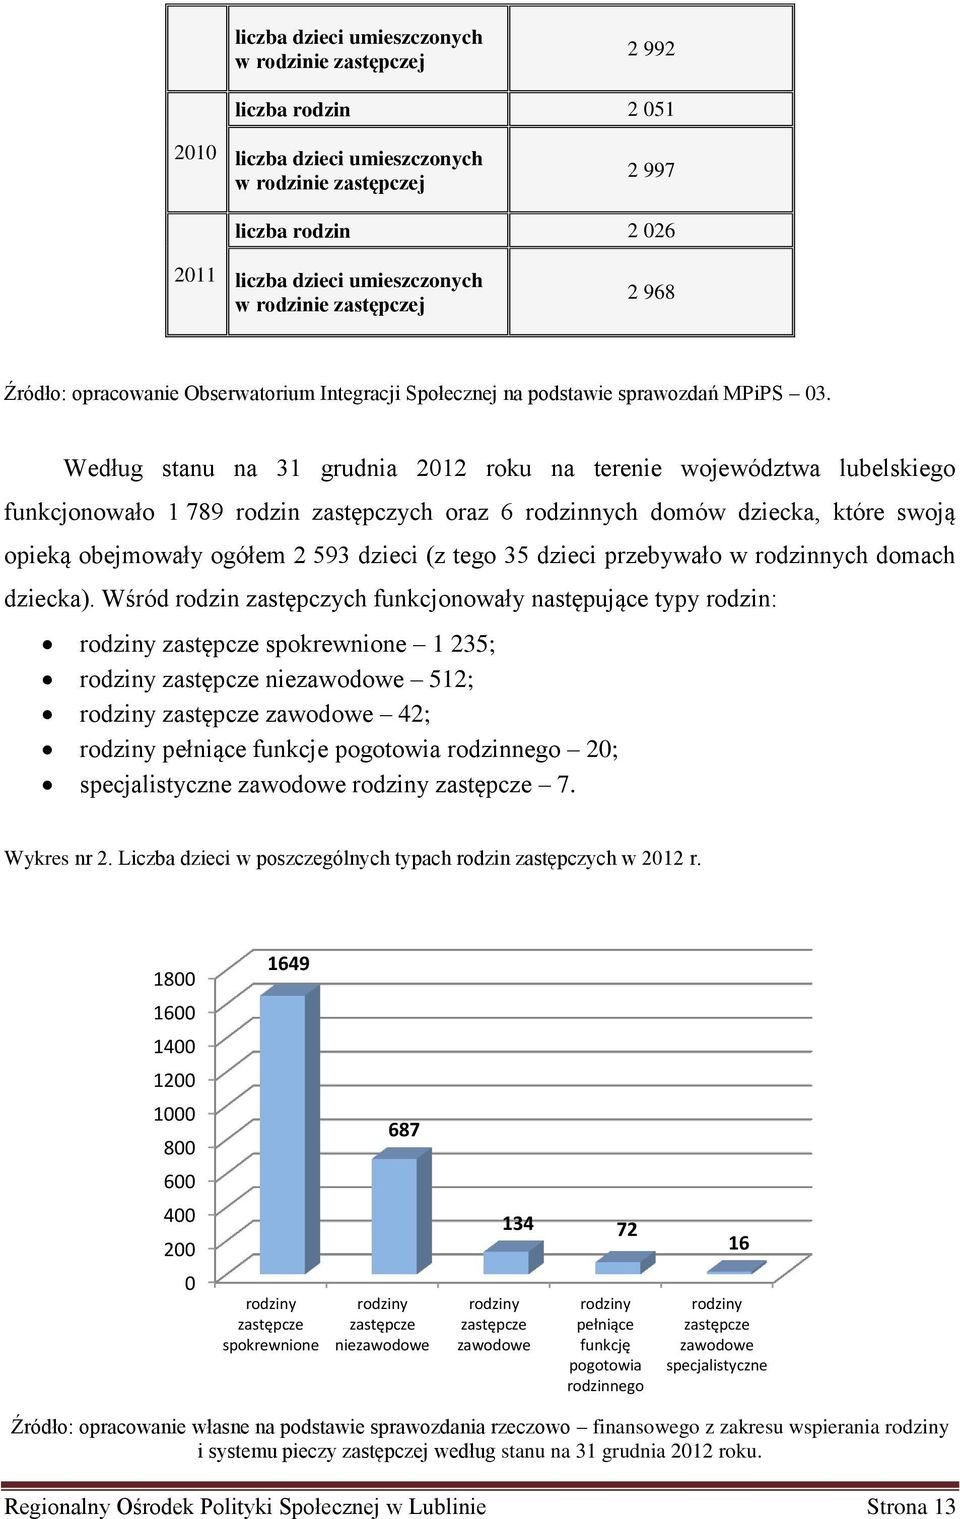 Według stanu na 31 grudnia 2012 roku na terenie województwa lubelskiego funkcjonowało 1 789 rodzin zastępczych oraz 6 rodzinnych domów dziecka, które swoją opieką obejmowały ogółem 2 593 dzieci (z